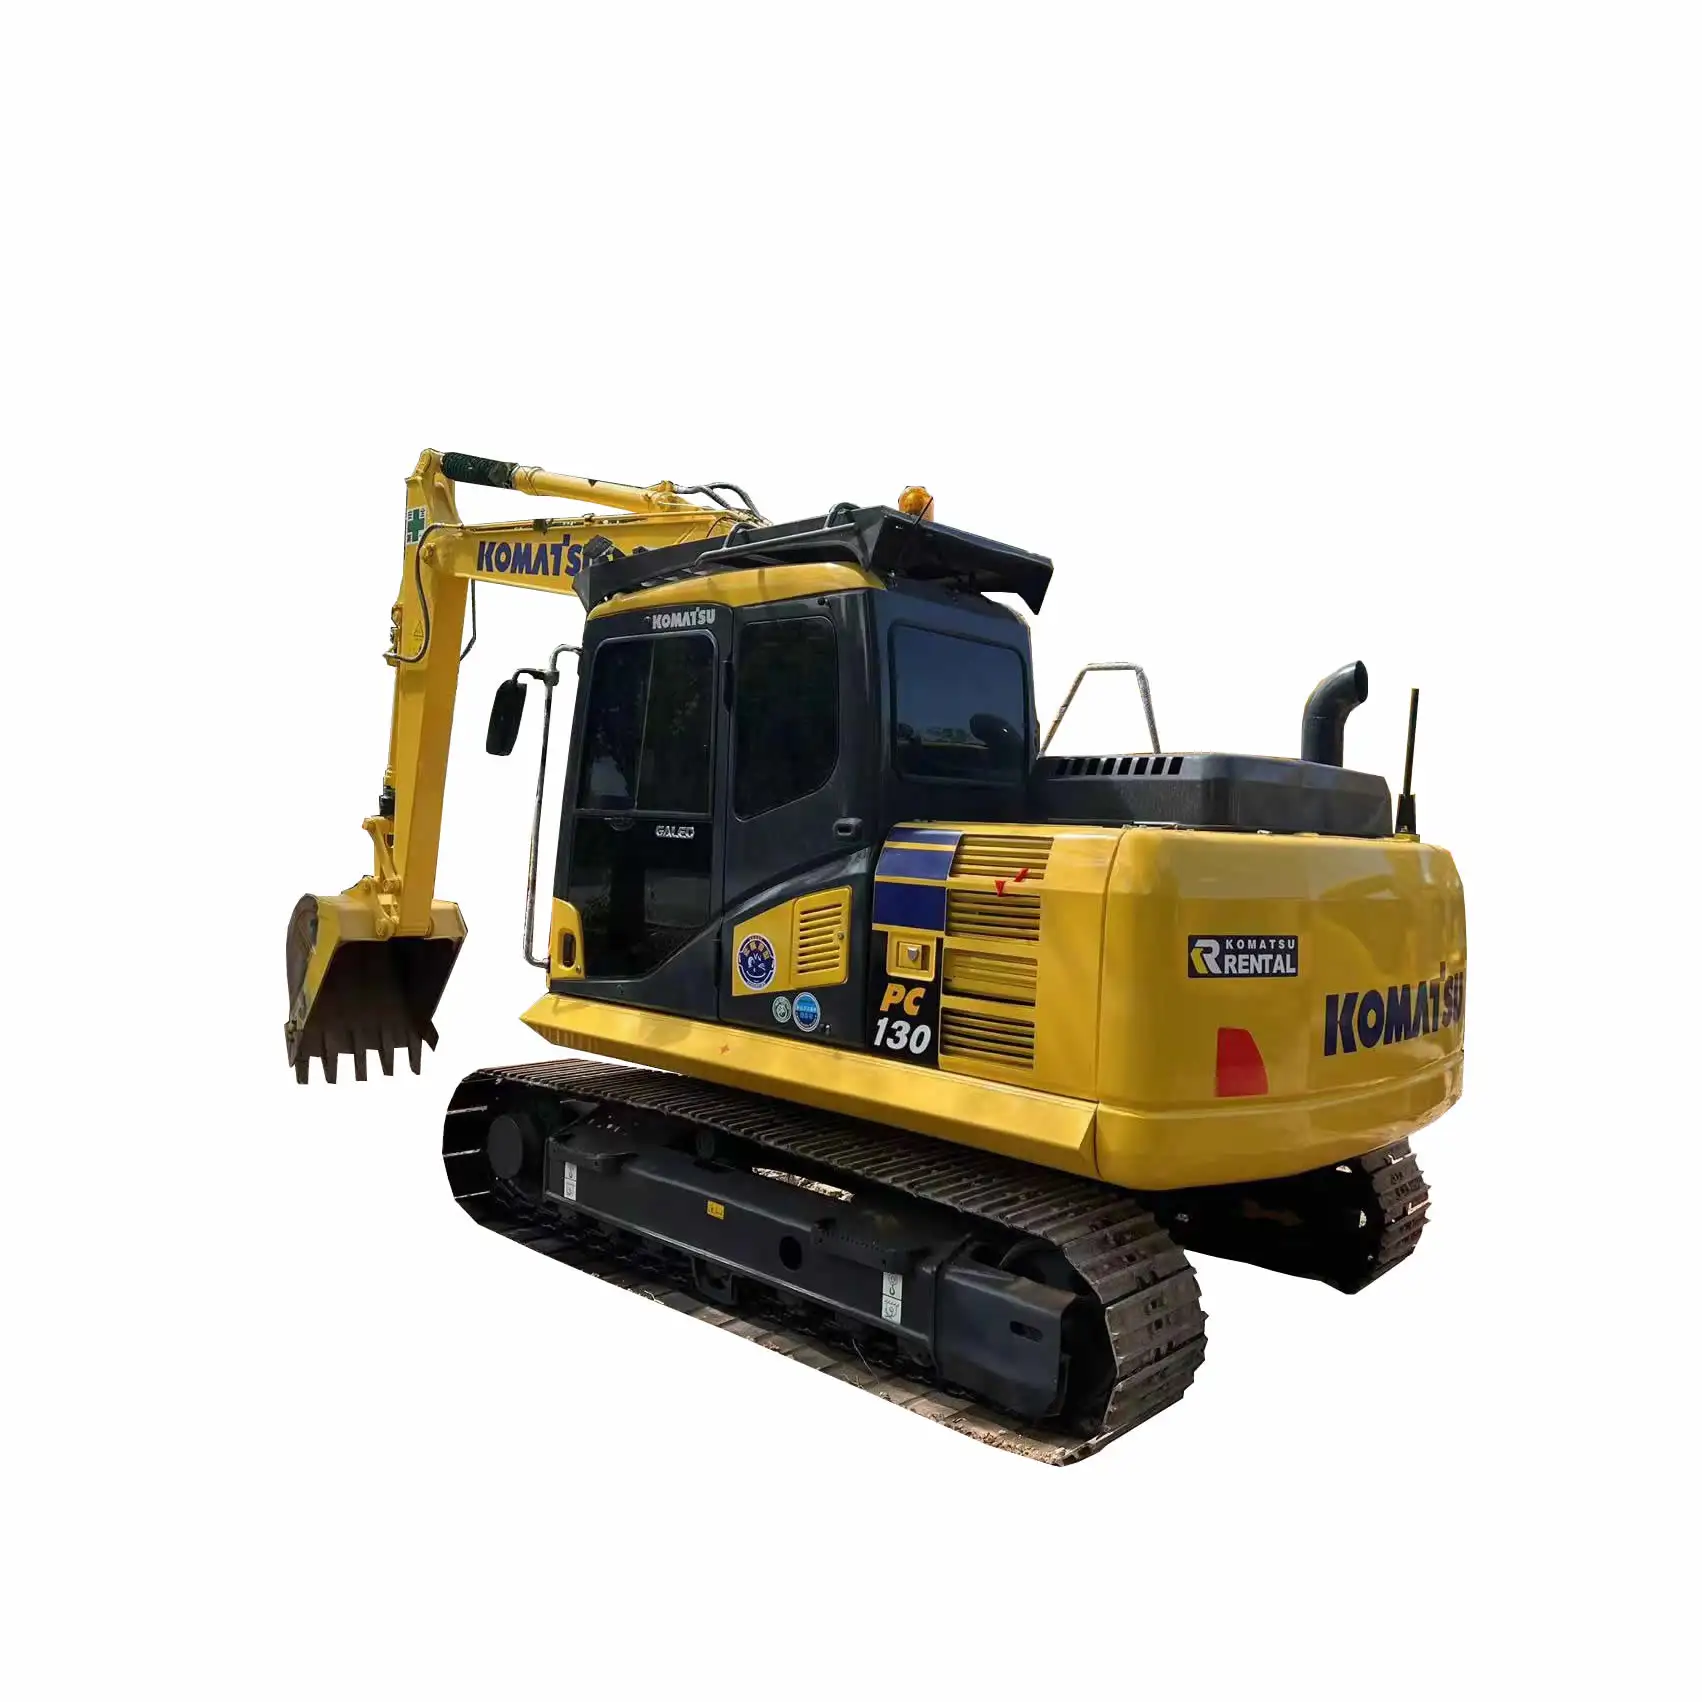 Mini escavatore 1 ton /3 ton /5 ton komatsu PC130 escavatore usato trattori/traktor